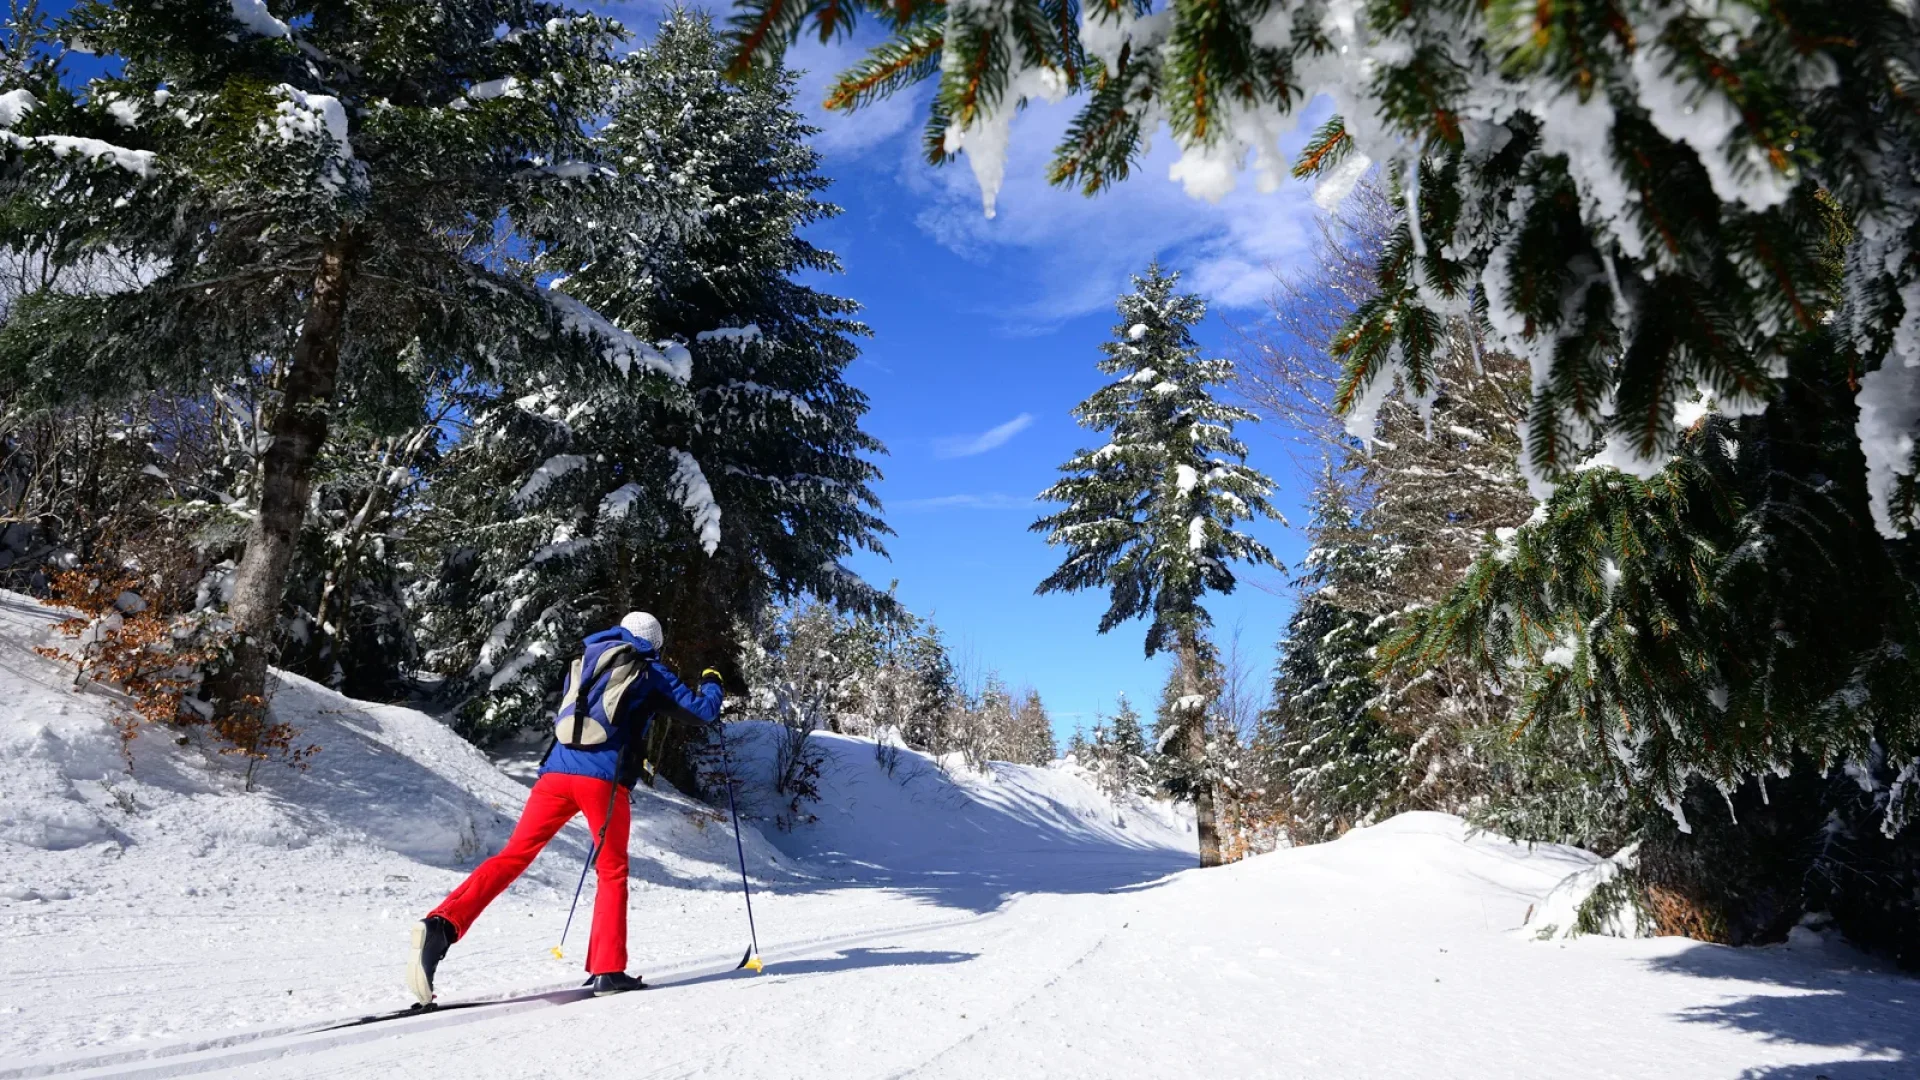 Personne faisant du ski de fond à la chavade au milieu des arbres couverts de neige